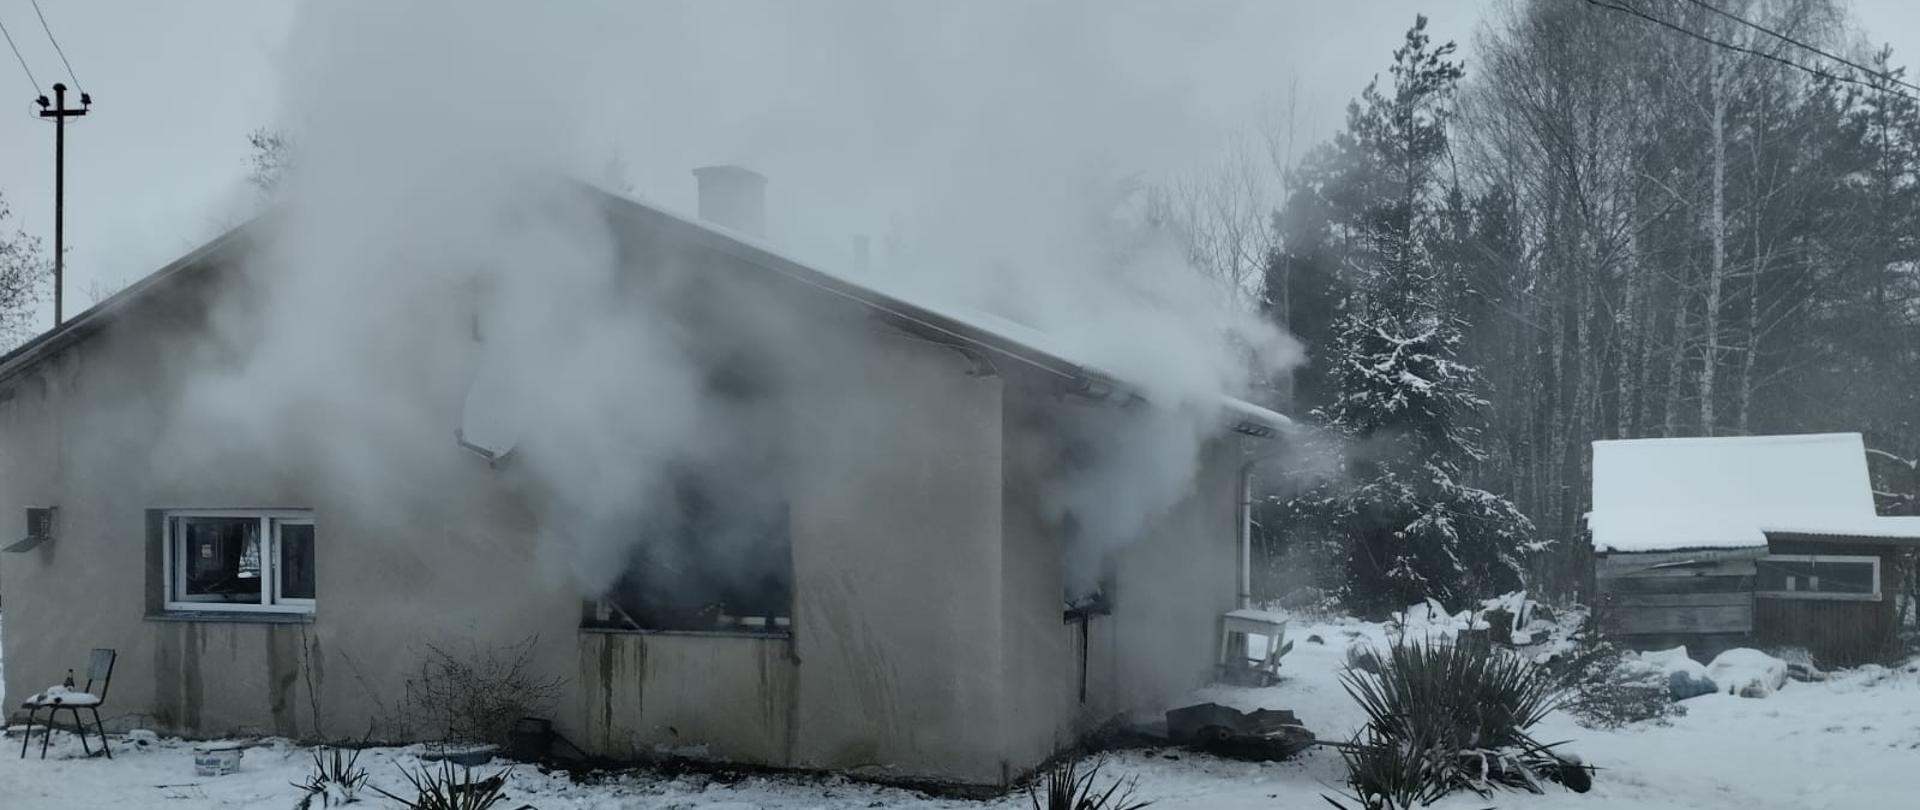 Dom z którego wydobywa się dym, na pierwszym planie widać wąż strażacki zakończony prądownicą.